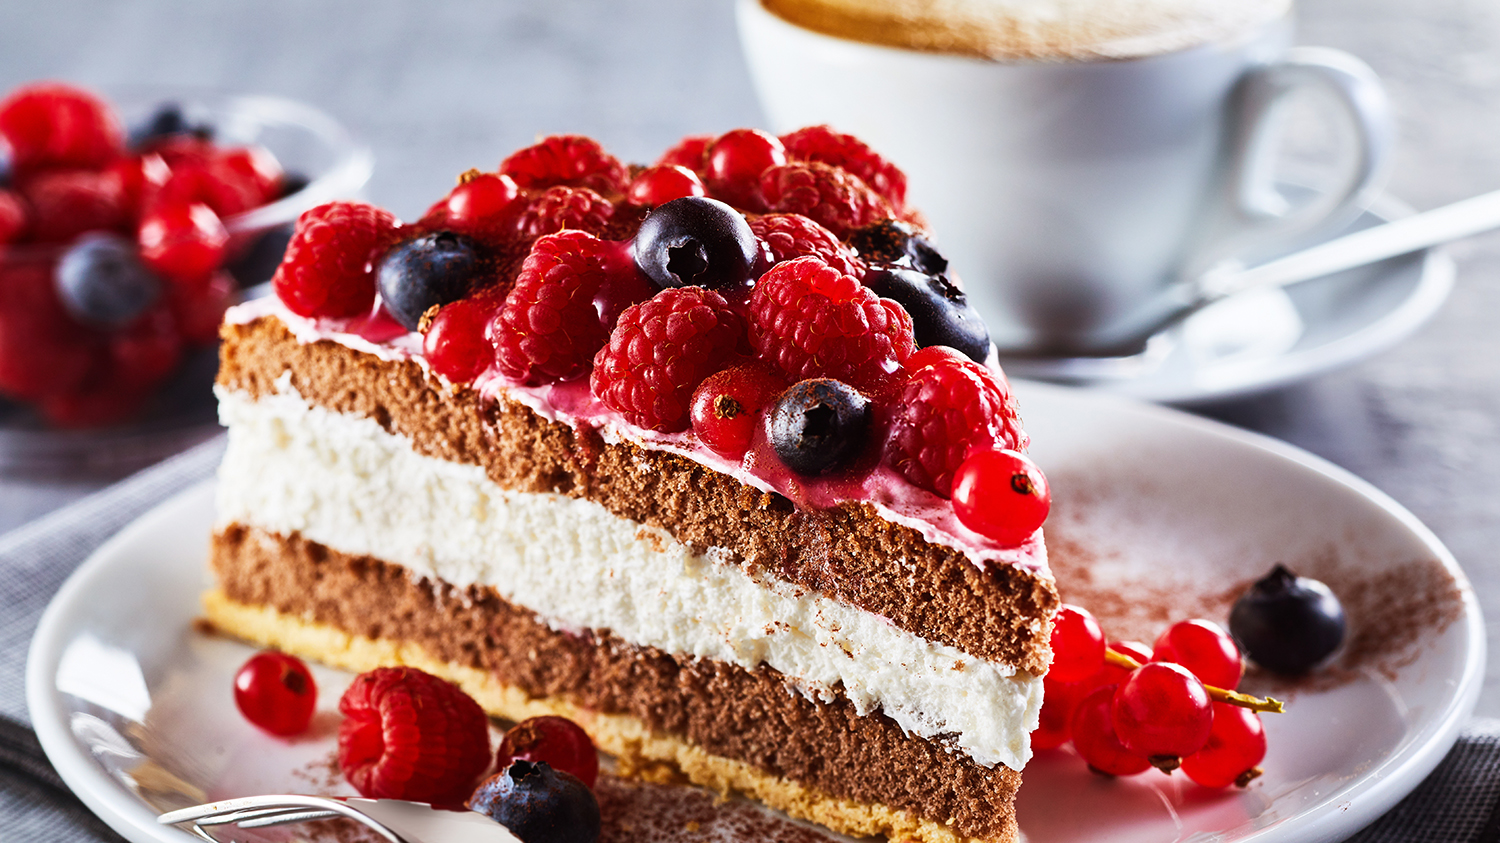 Ein schönes Stückchen Kuchen zum Kaffee. Ist das trotz Diabetes möglich?